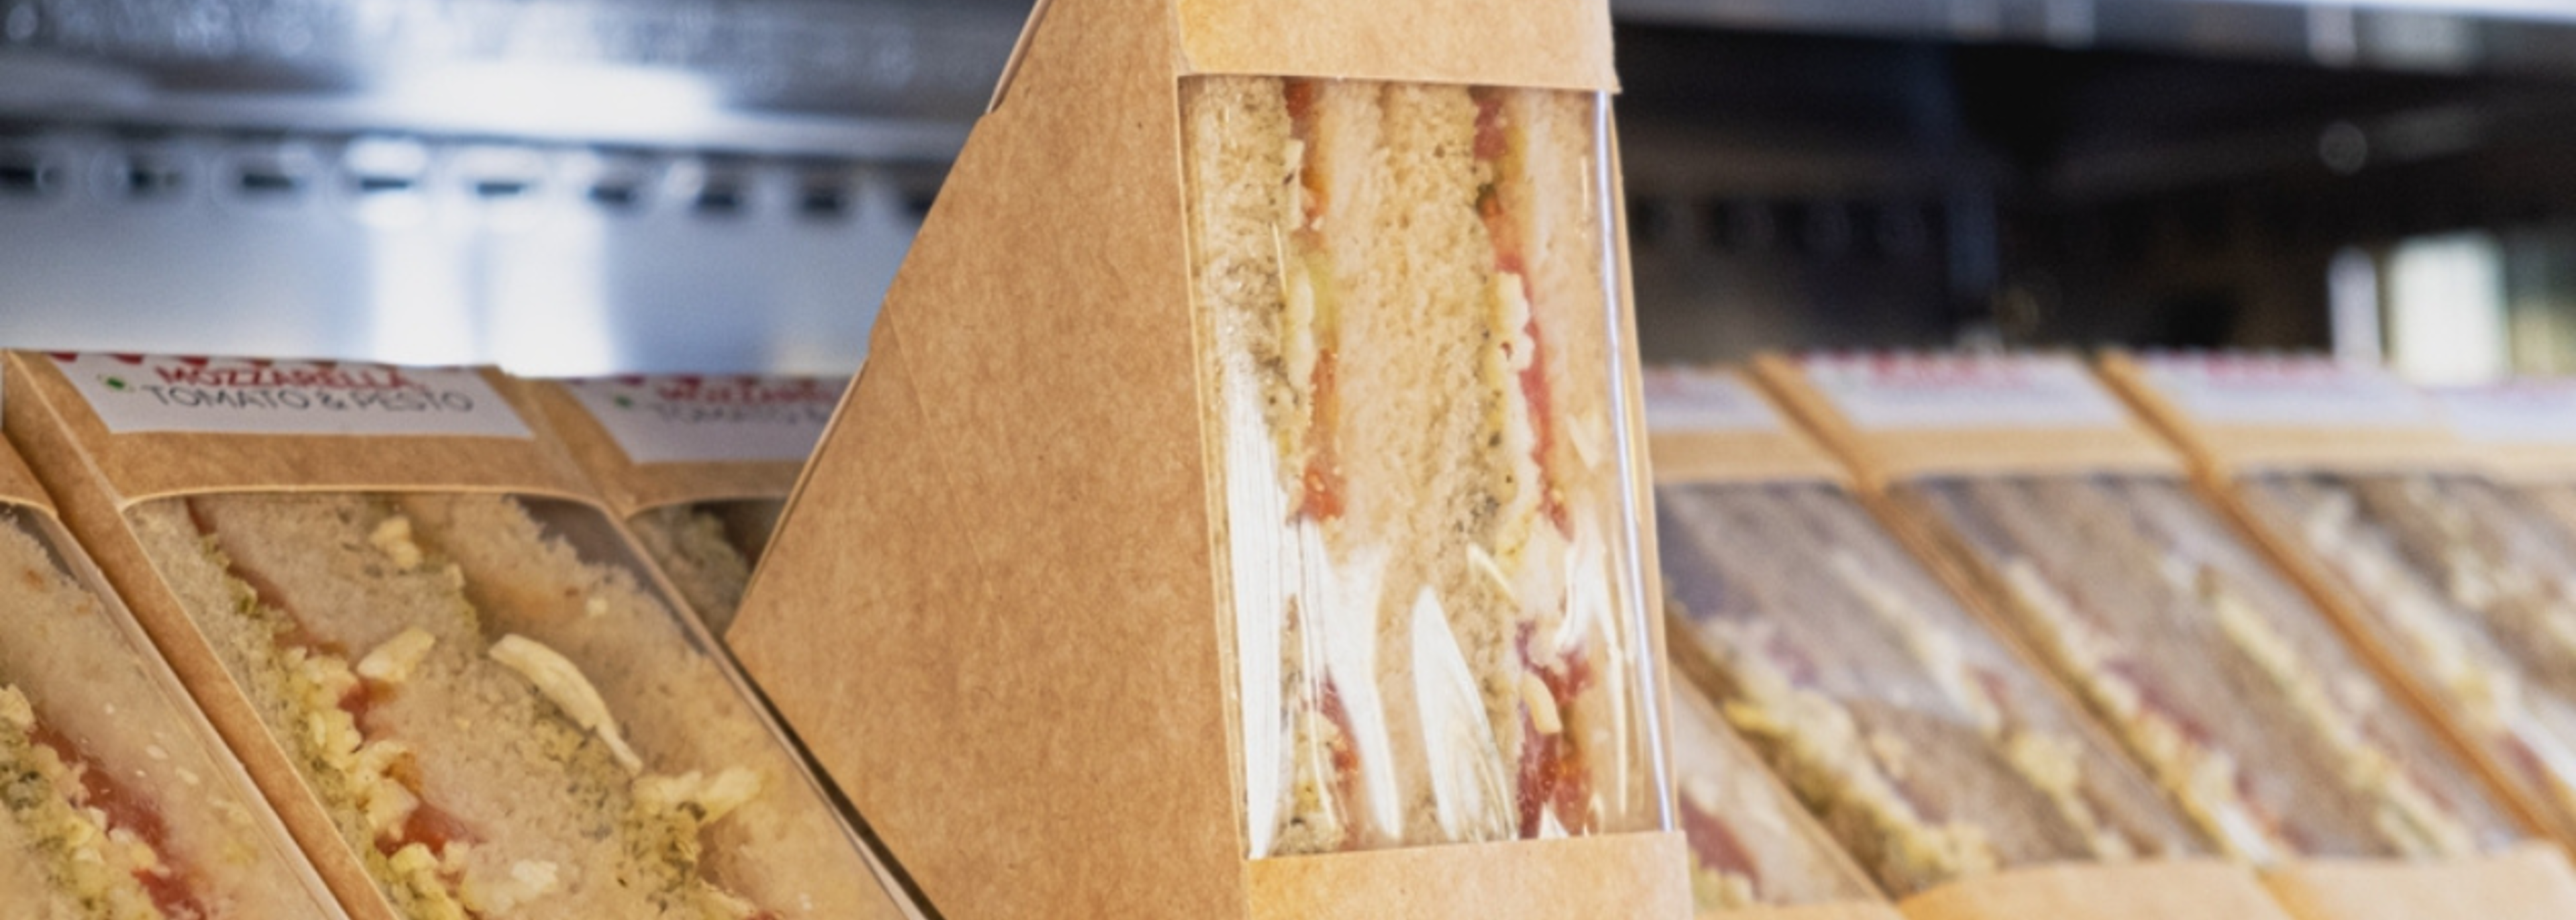 Sandwich recall amid potential E. coli contamination